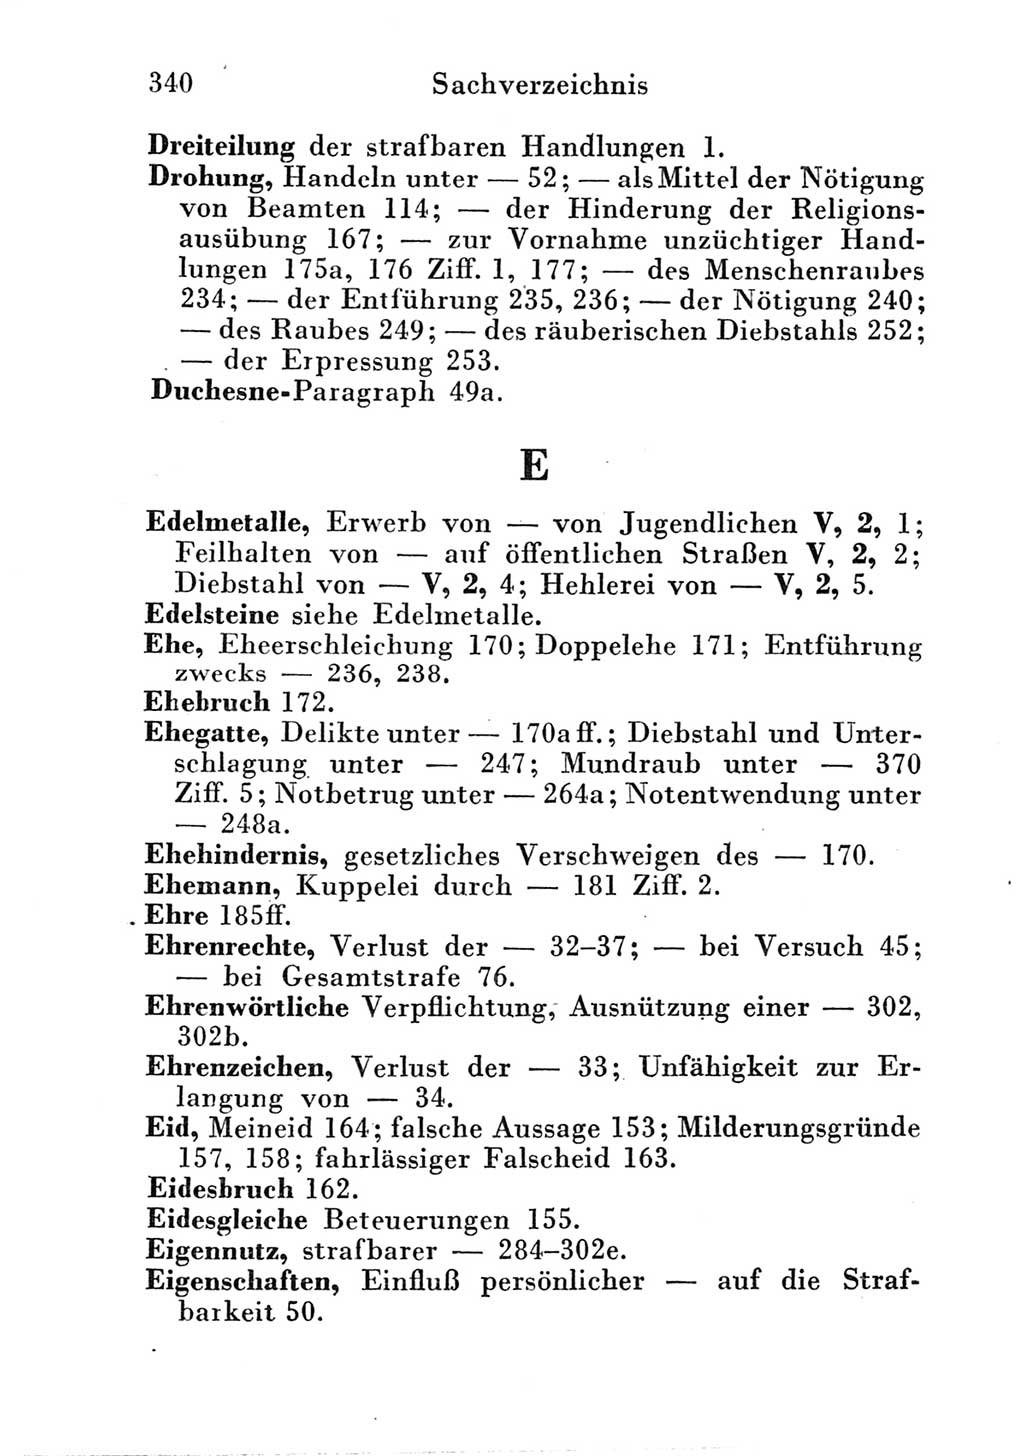 Strafgesetzbuch (StGB) und andere Strafgesetze [Deutsche Demokratische Republik (DDR)] 1951, Seite 340 (StGB Strafges. DDR 1951, S. 340)